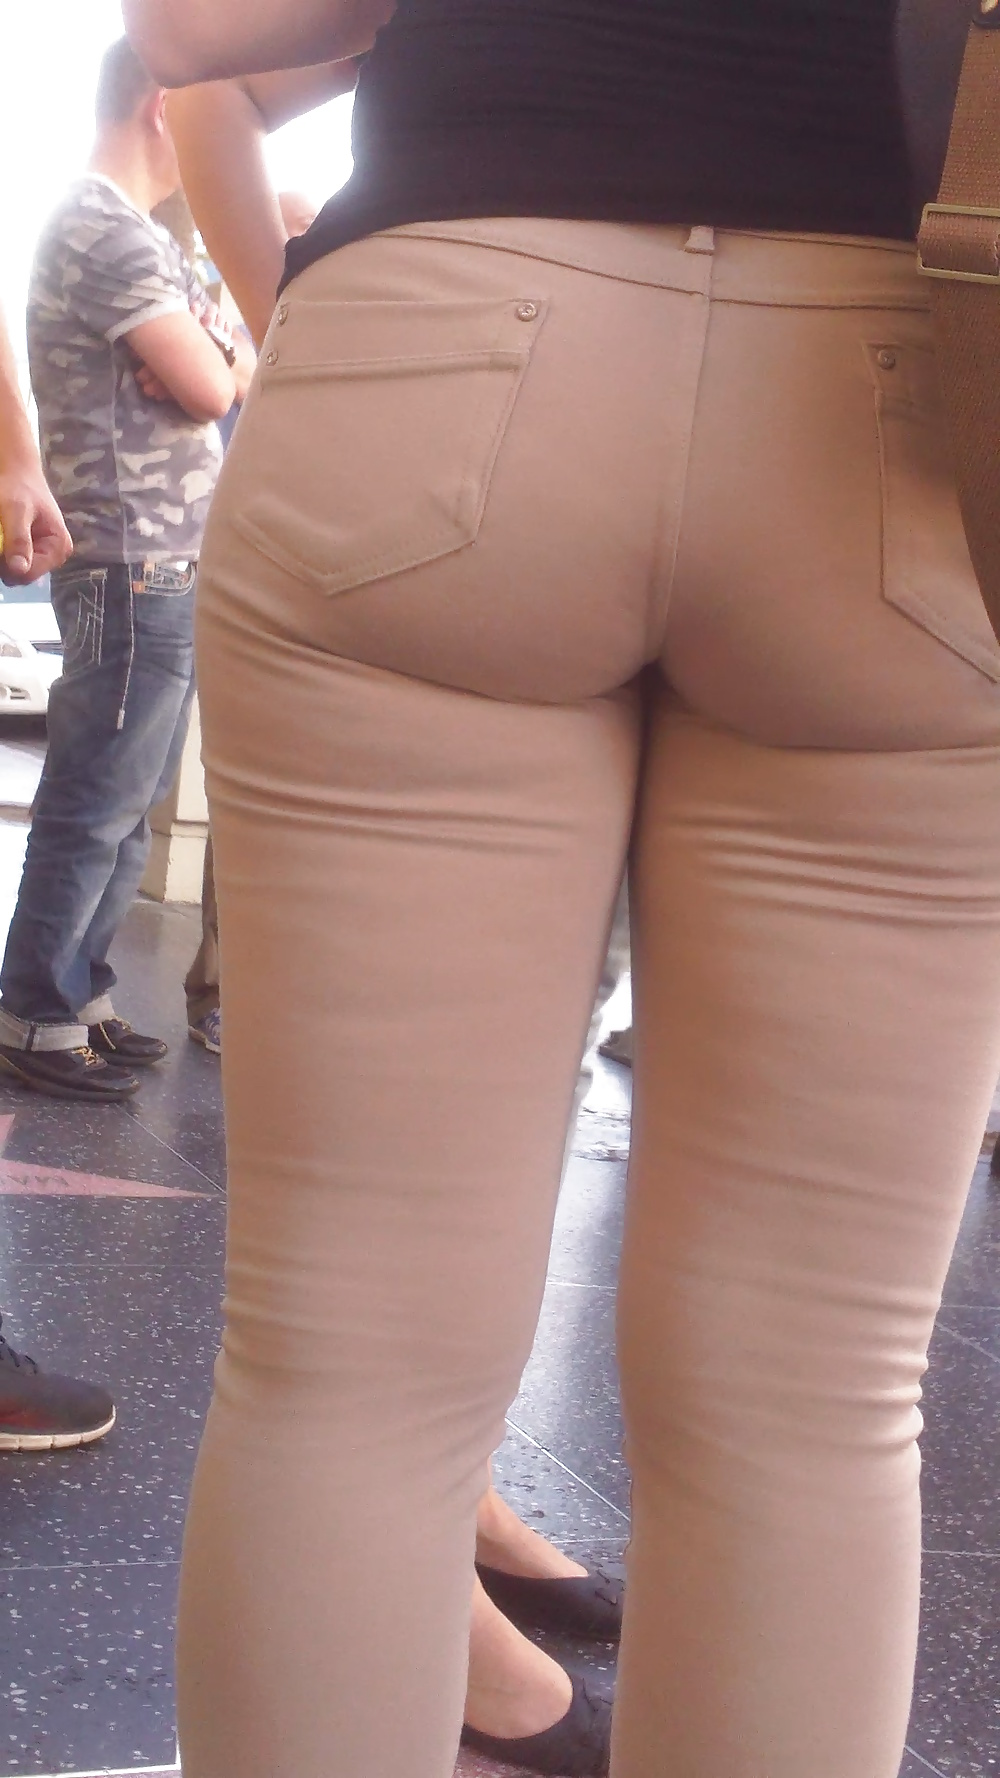 Popular teen girls ass & butt in jeans Part 6 #32009839